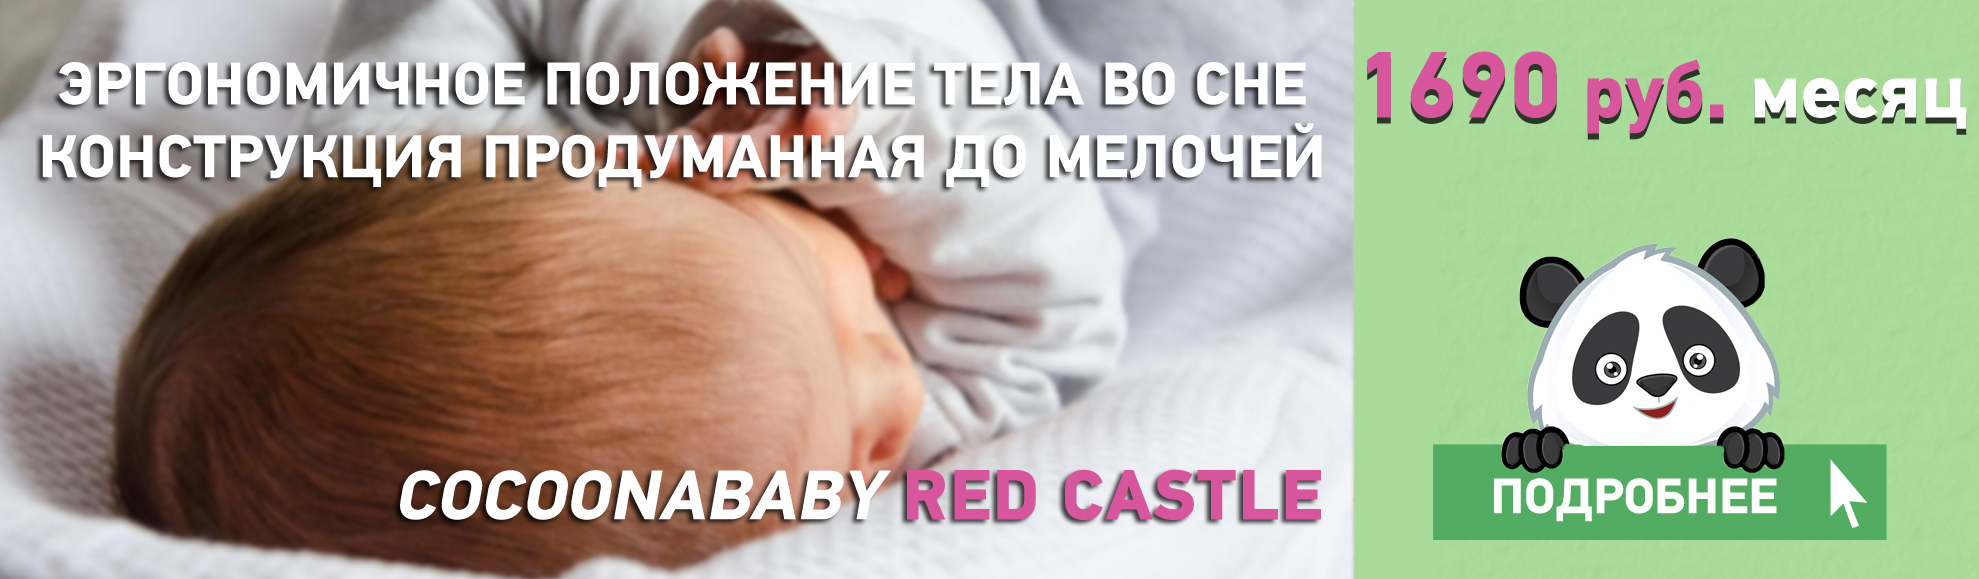 Взять в аренду кокон для новорожденных Red Castle в Москве